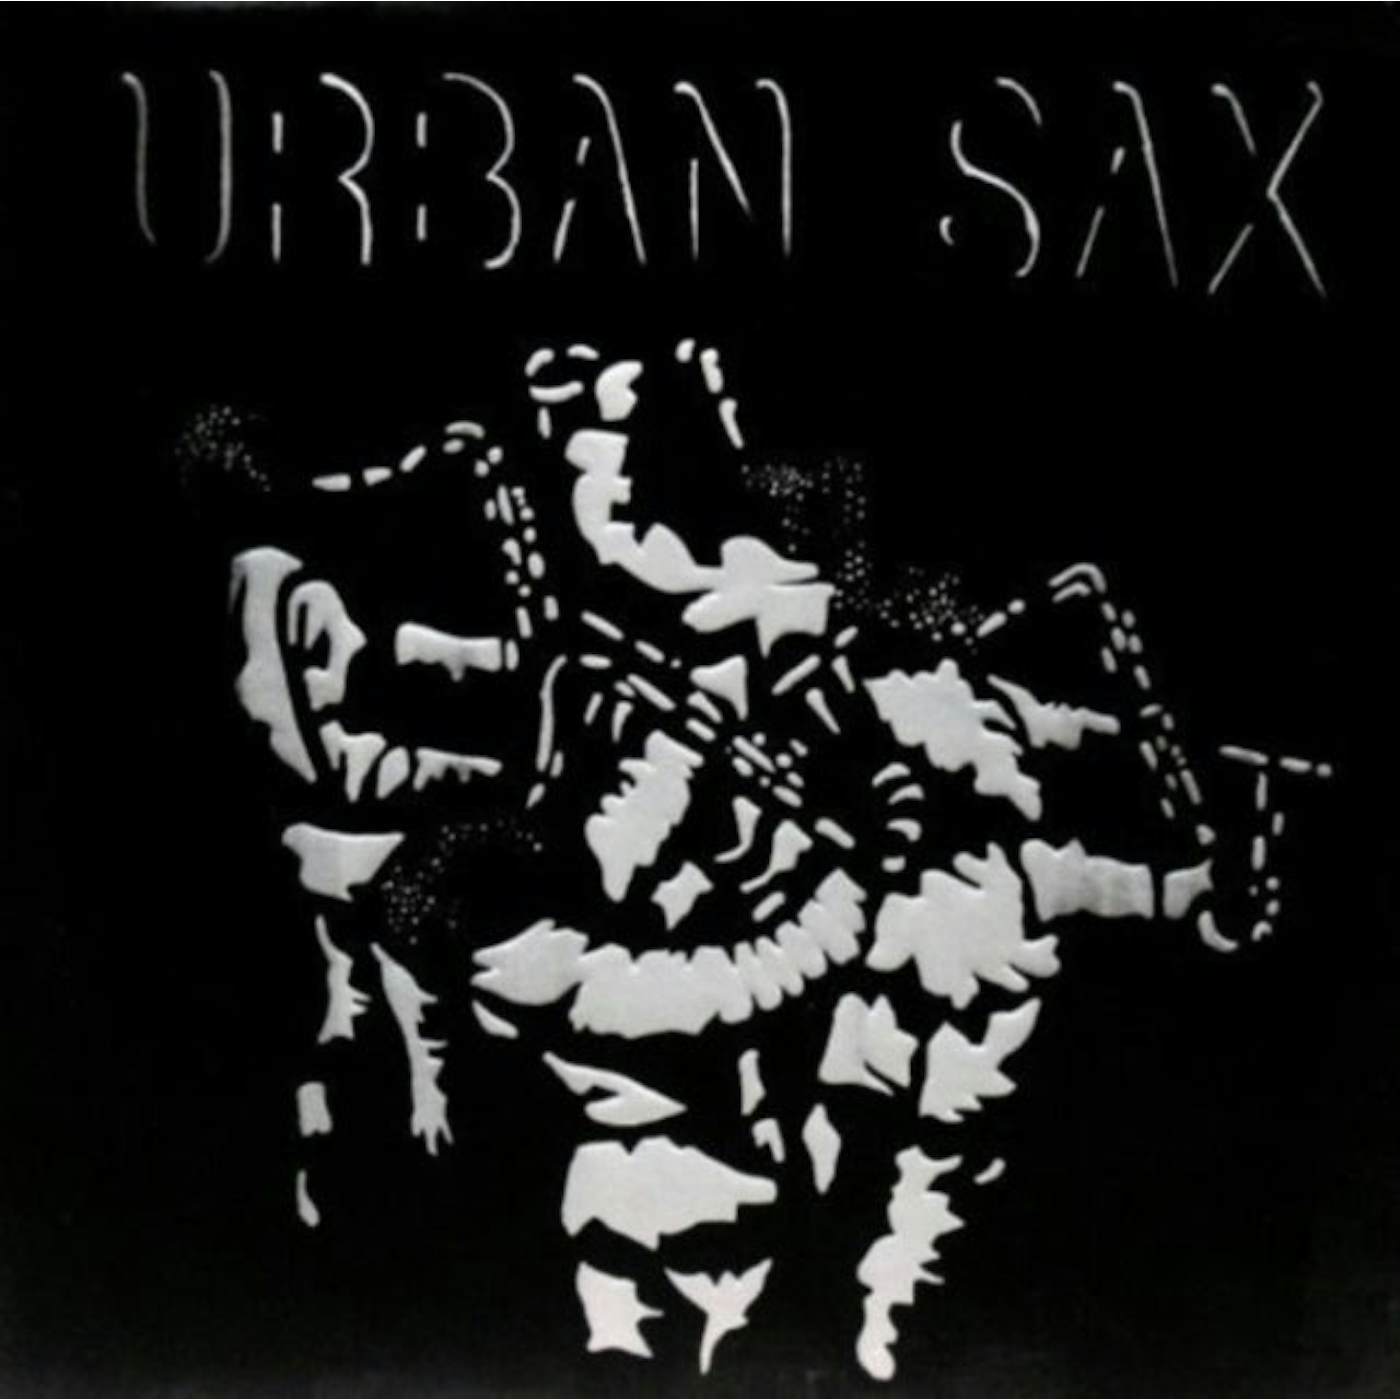 Urban Sax LP - Fraction Sur Le Temps (Vinyl)